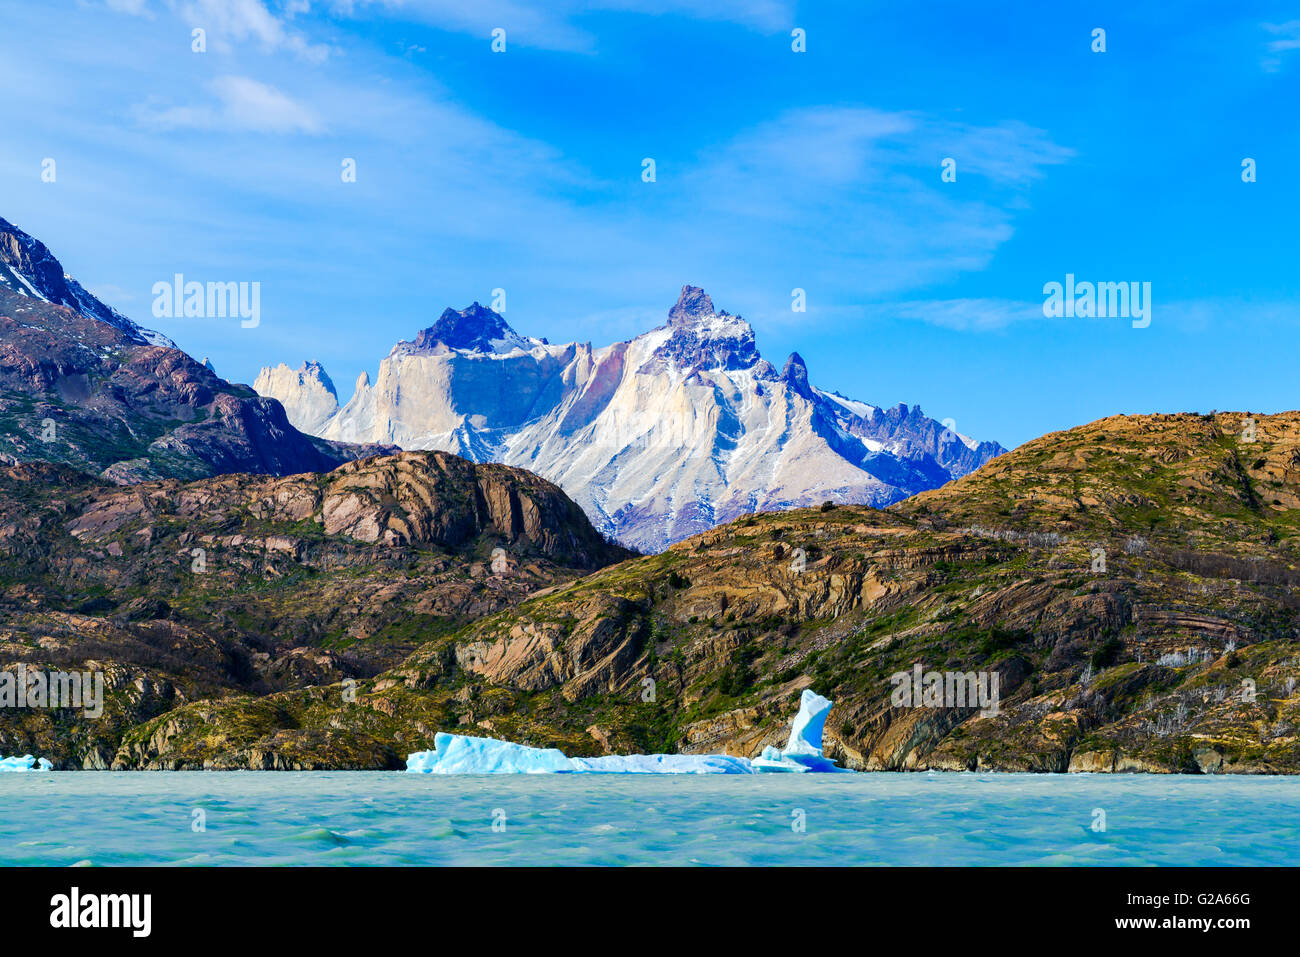 Vista della bellissima montagna al lago grigio con iceberg galleggianti sull'acqua in Patagonia, Cile Foto Stock